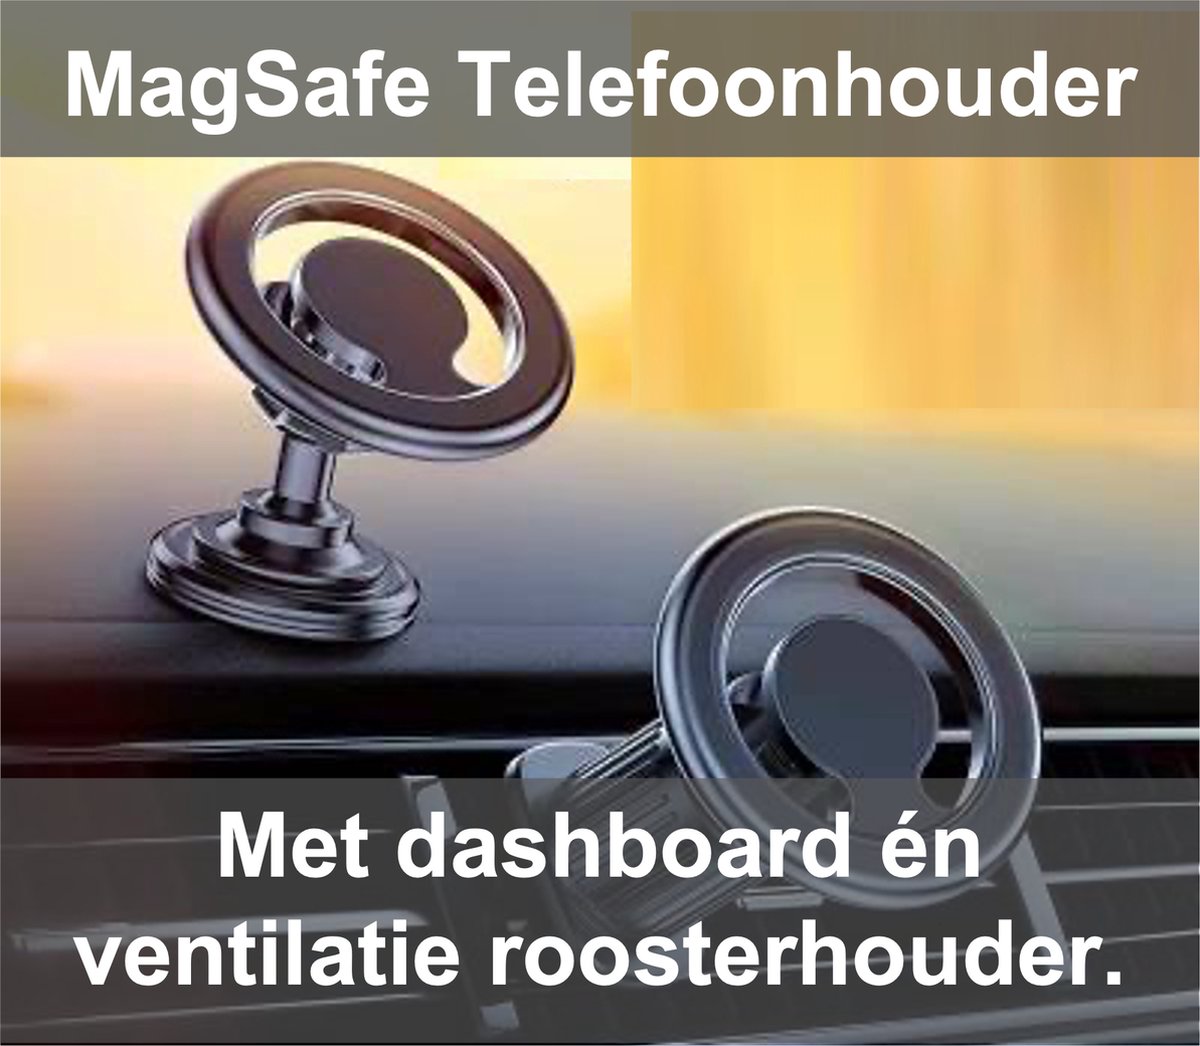 Universele Telefoonhouder voor iPhone met Magsafe- Dashboard - Ventilatierooster - MagSafe - Houder Auto universeel - Apple - Android - inclusief Dashboard en Ventilatierooster bevestiging.